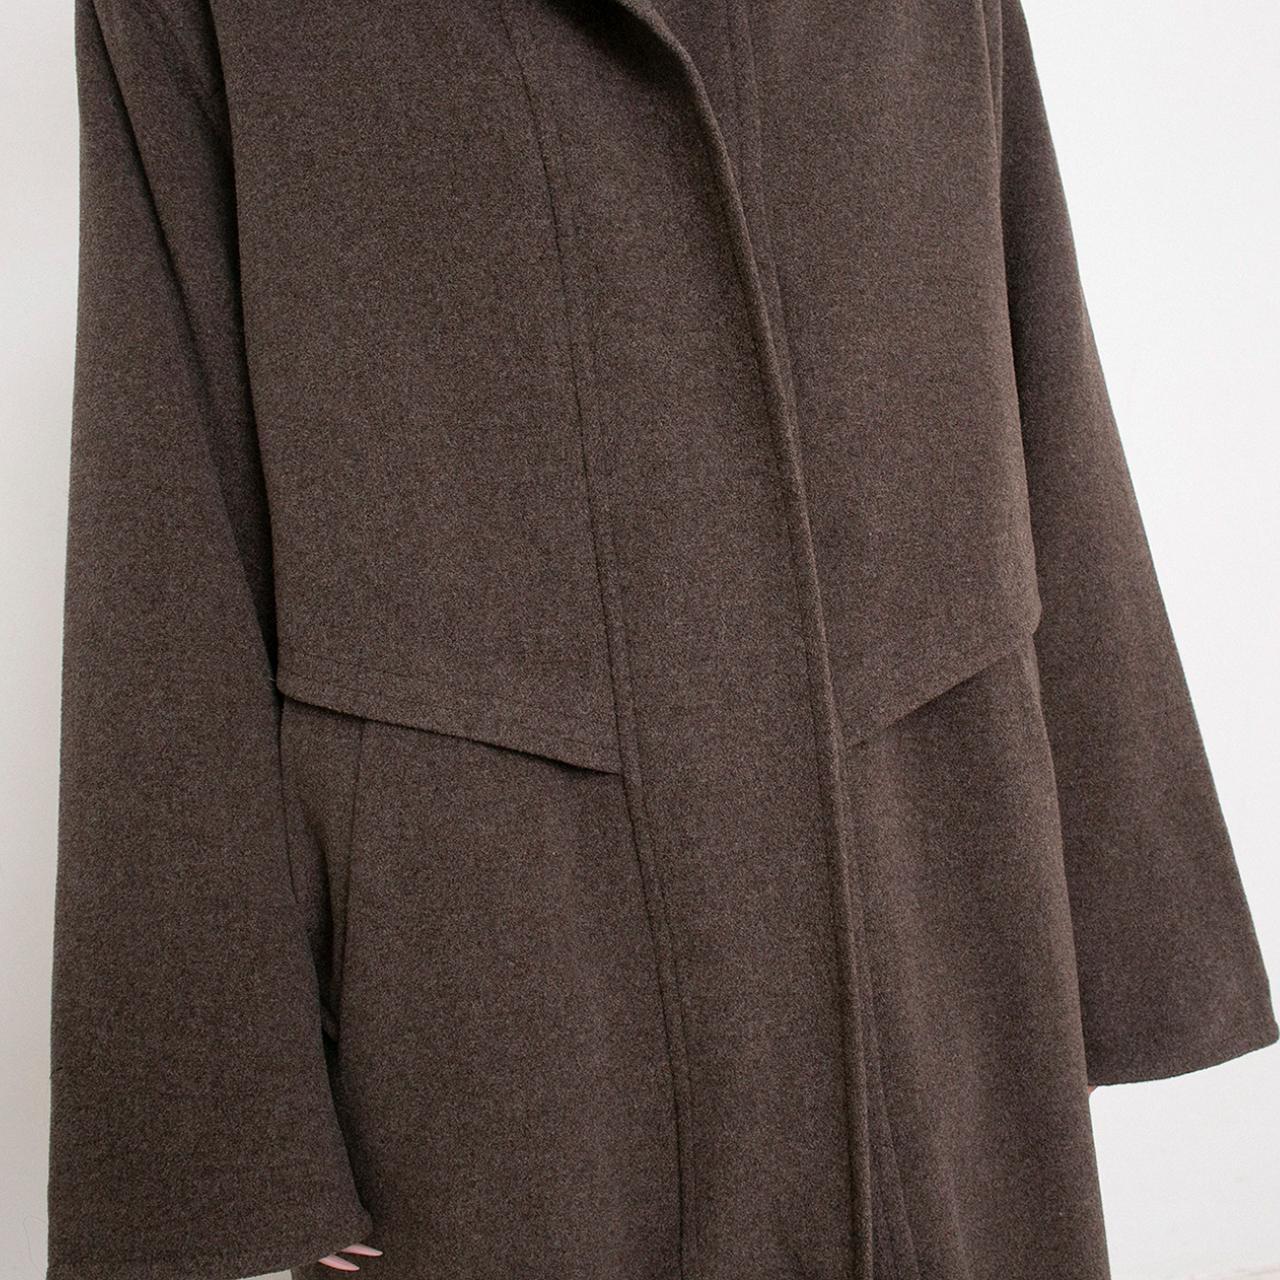 Vintage Wool Coat Long Brown Outerwear Solid Pattern... - Depop